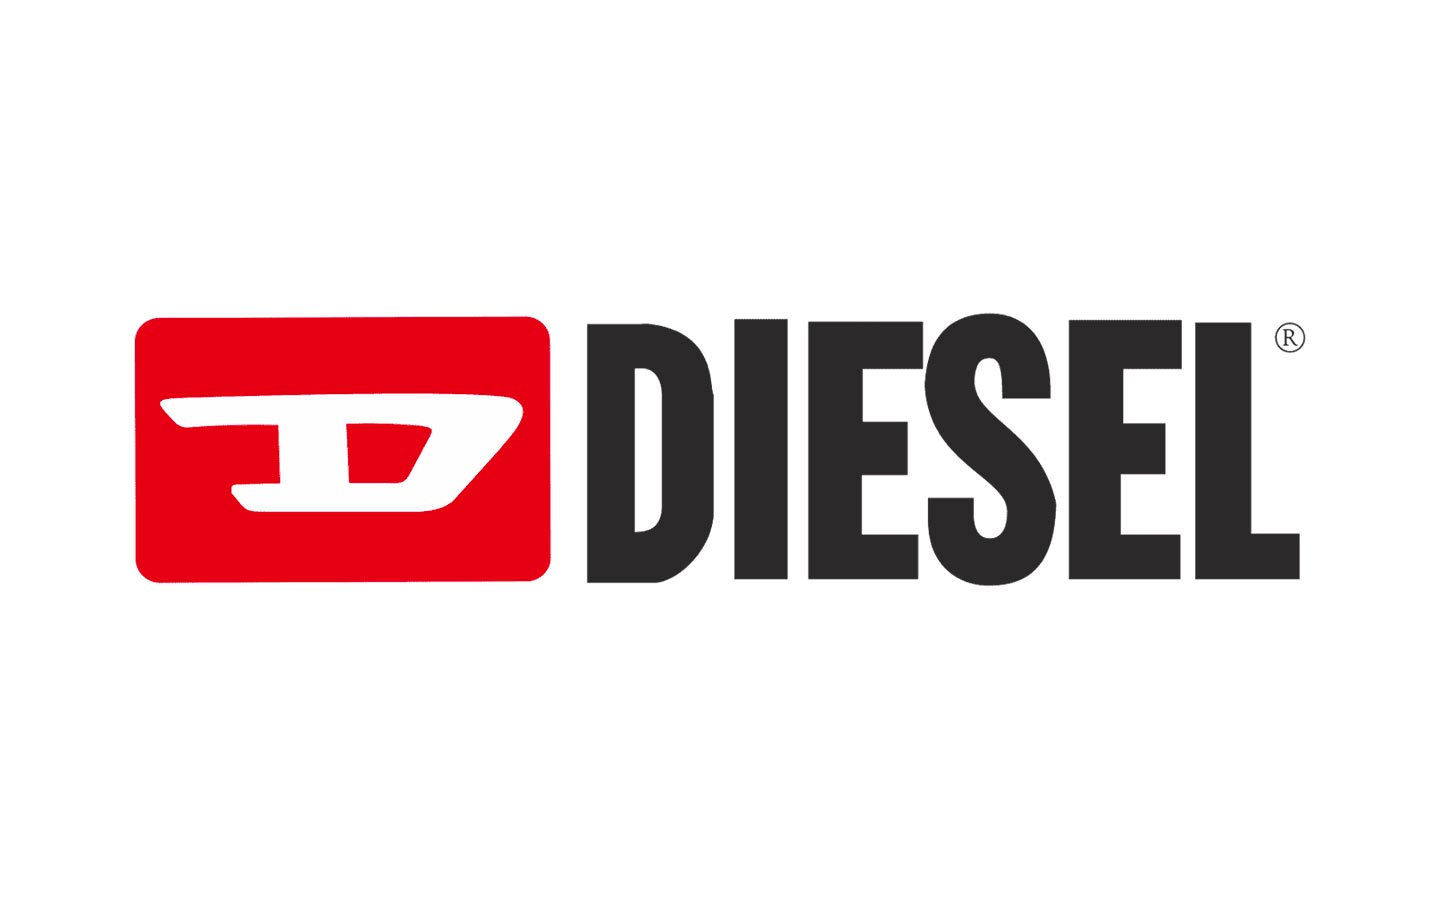 The first Diesel logo